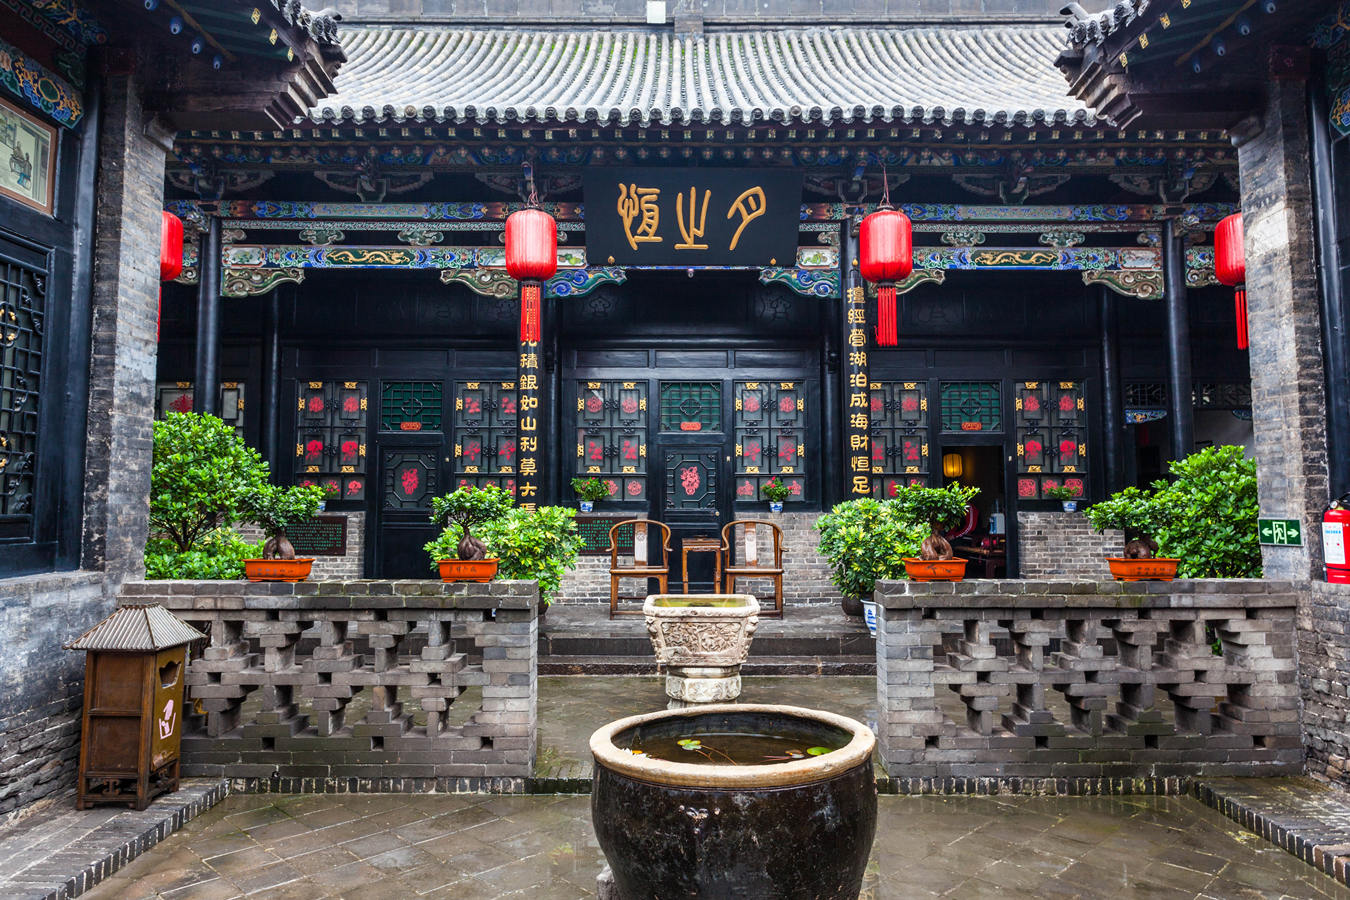 ★ Viaggio in Cina con Guida Nazionale Grotte Buddiste e Lanterne Rosse della Cina